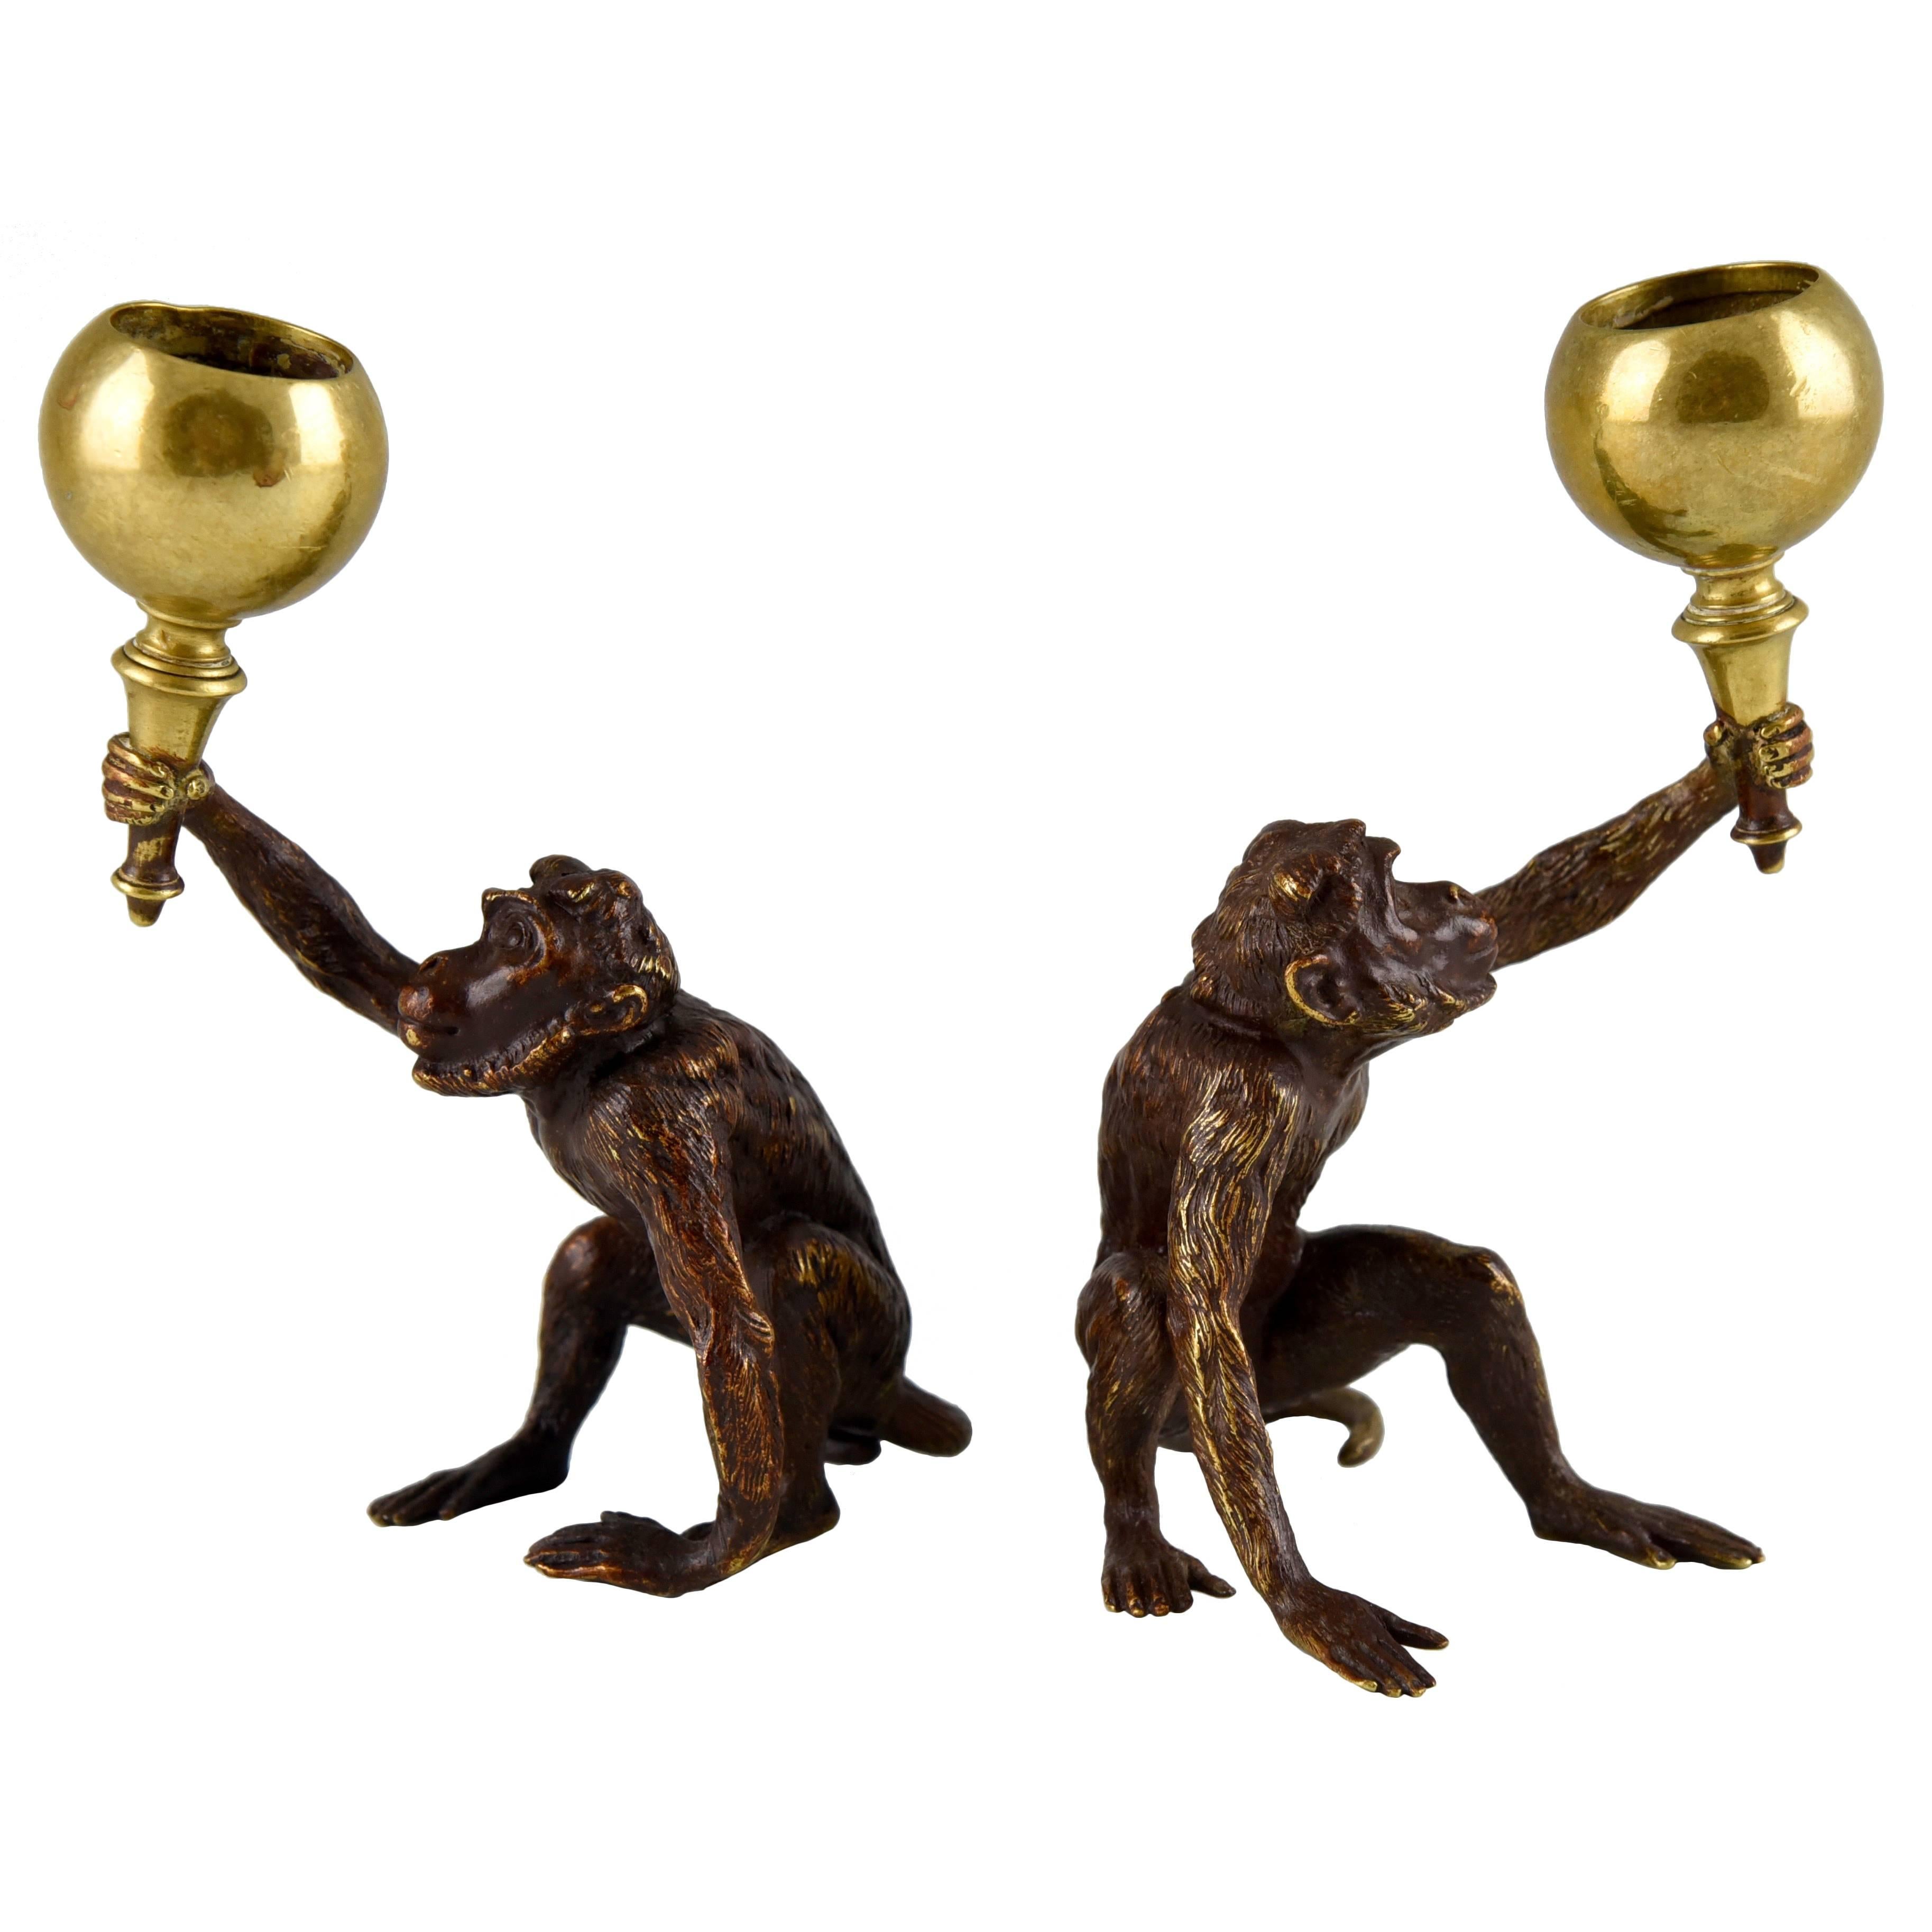 Pair of Antique Vienna Bronze Monkey Candlesticks By F. Bergmann 1900